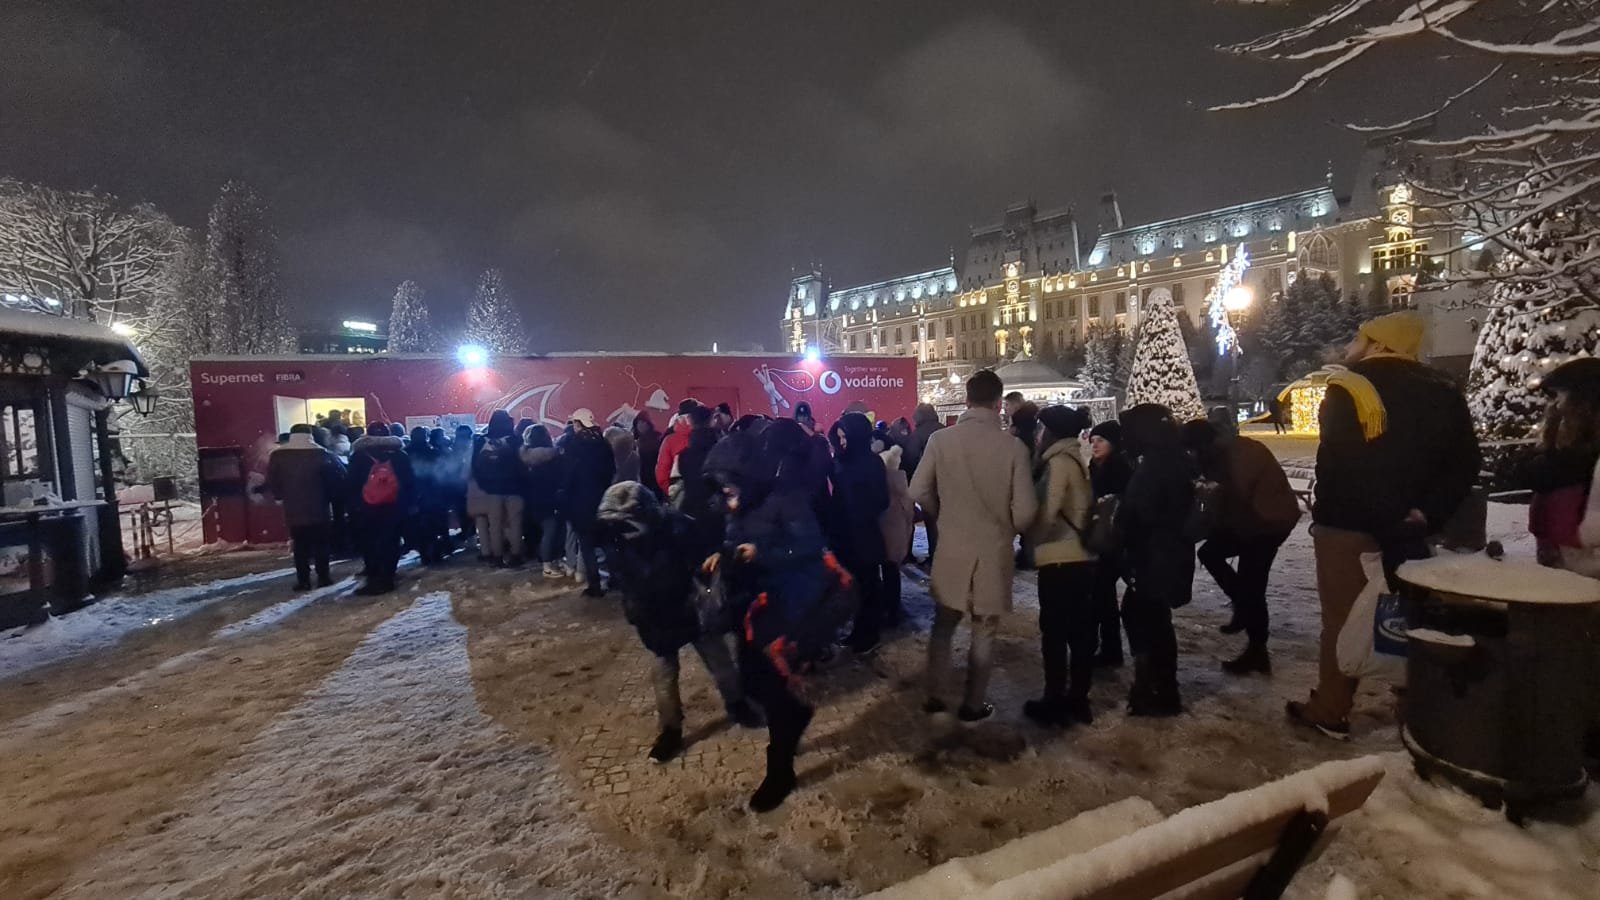  FOTO: Peste 200 de persoane la coadă pentru a intra la patinoar în Iași